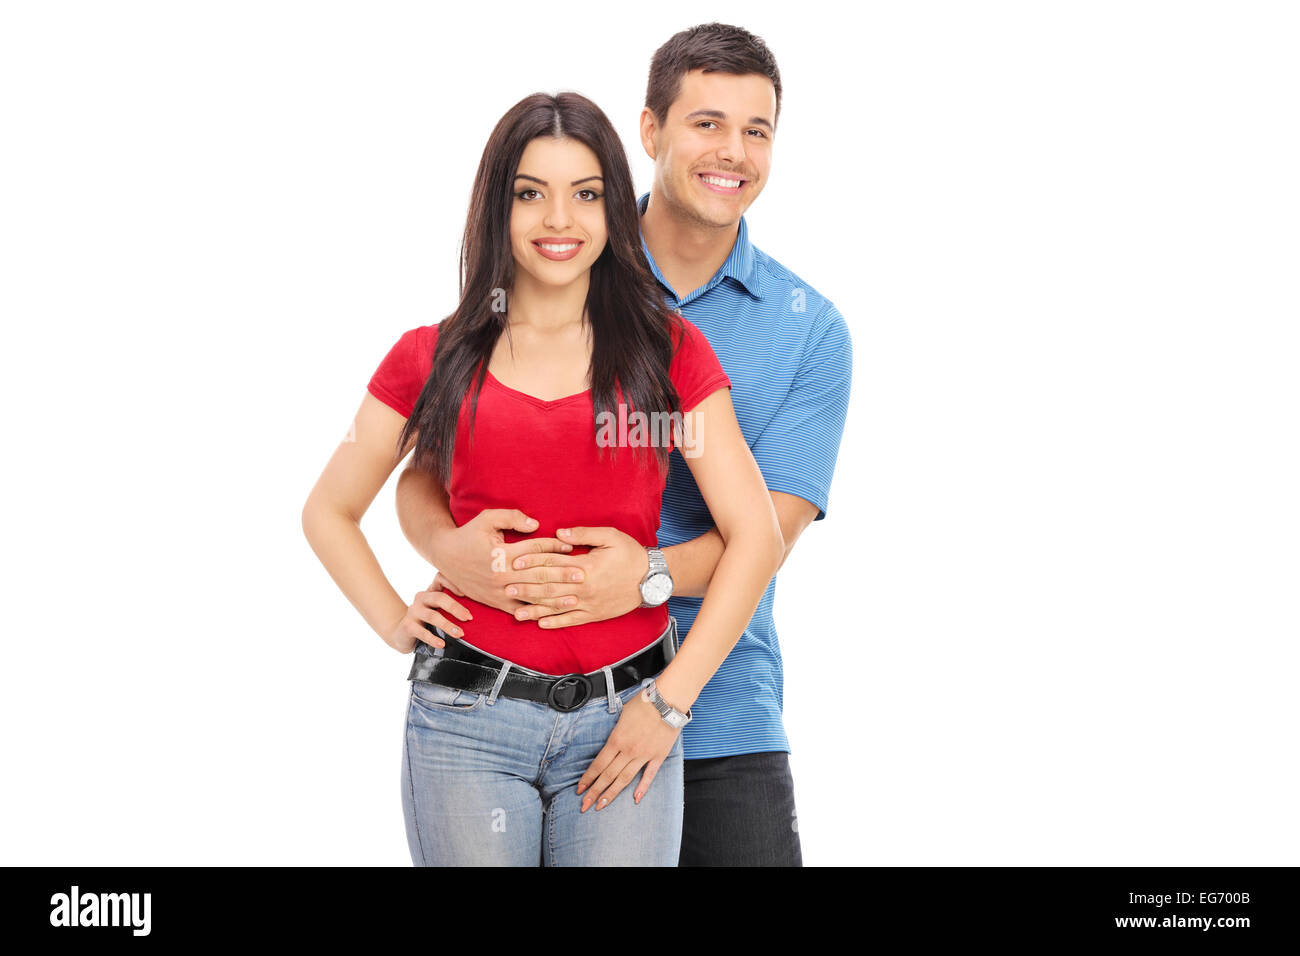 Paar posieren zusammen isolierten auf weißen Hintergrund Stockfoto